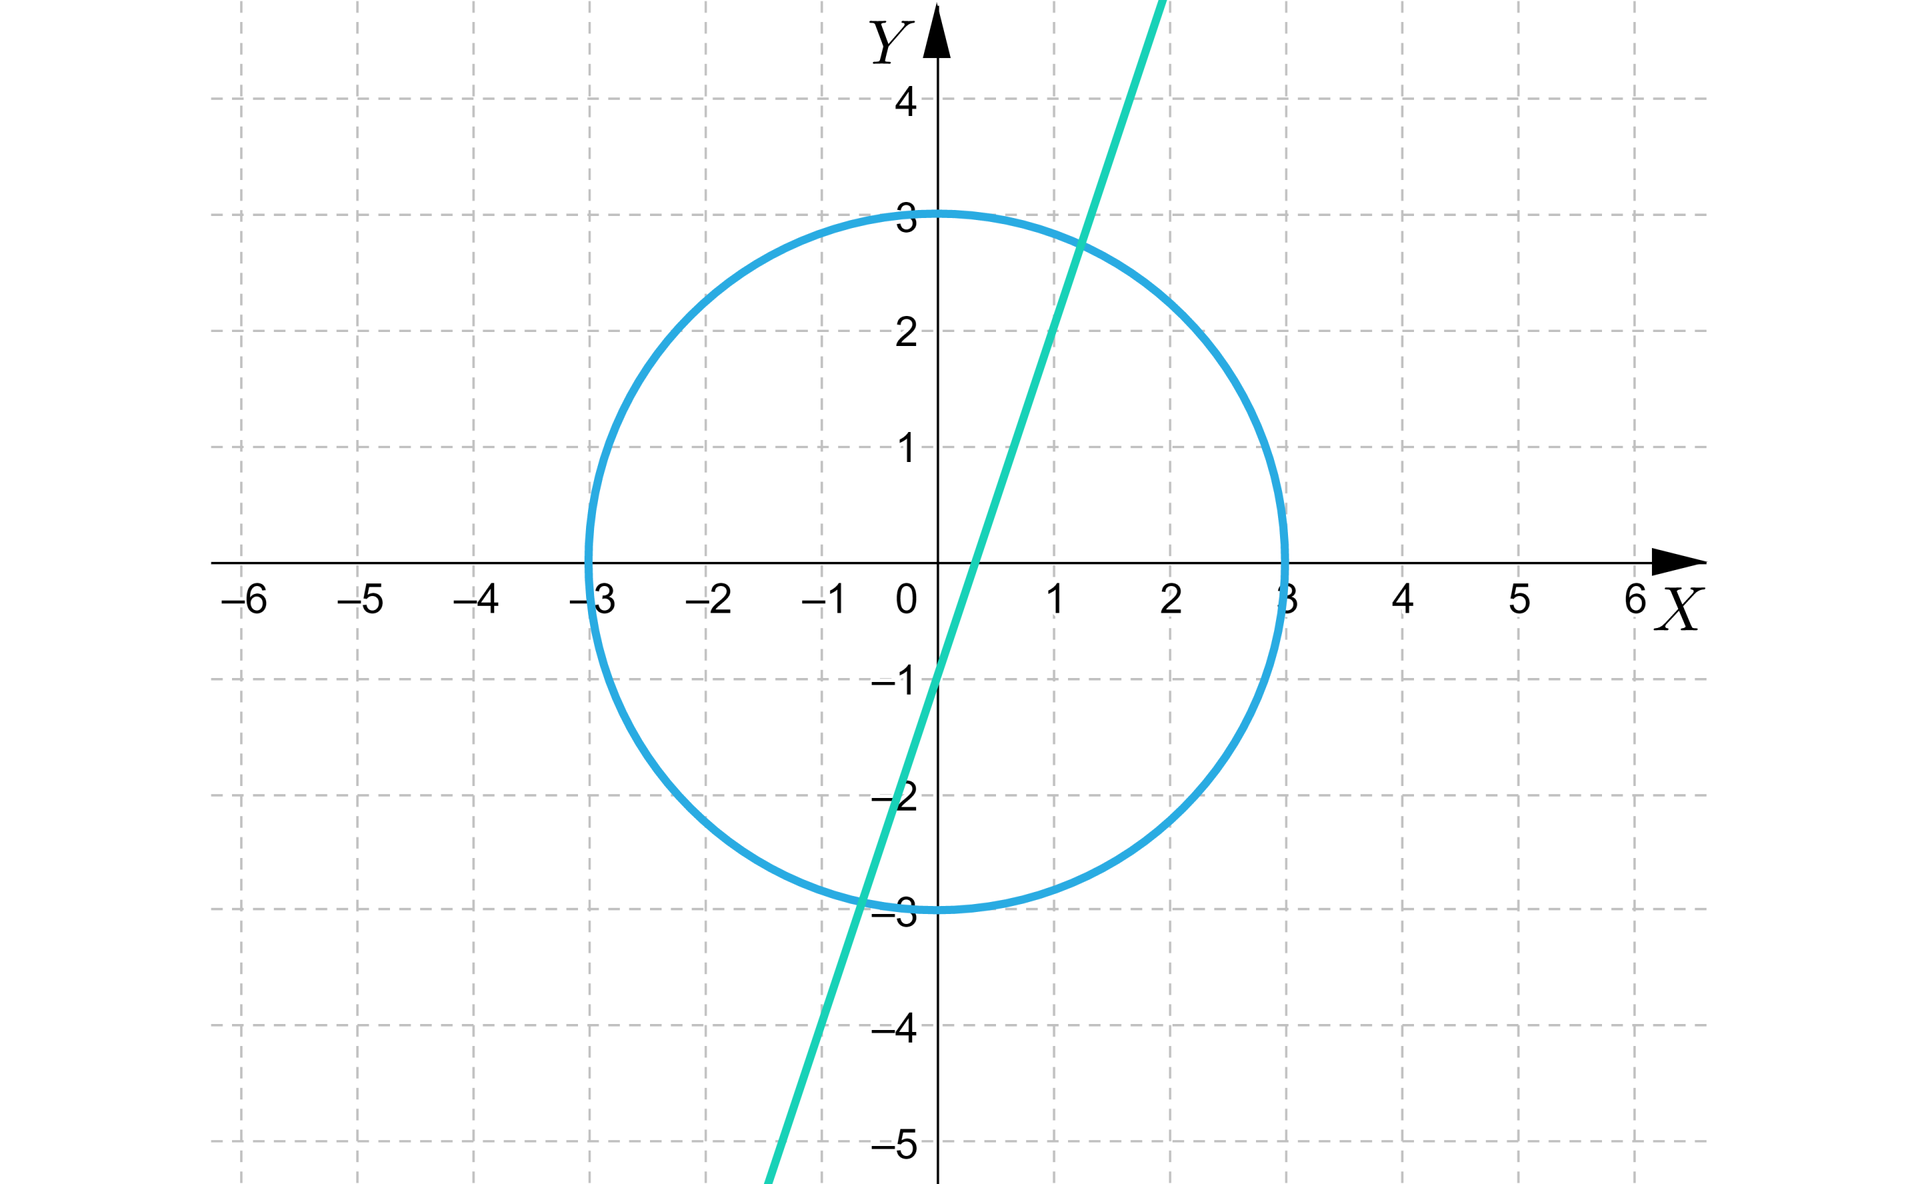 Grafika przedstawia układ współrzędnych z poziomą osią x od minus sześciu do sześciu i pionową osią y od minus pięciu do czterech. Na płaszczyźnie zaznaczono okrąg oraz prostą. Okrąg ma środek w środku układu współrzędnych i promień o długości trzy. Prosta przechodzi przez punkt początek nawiasu, 0, minus 1, zamknięcie nawiasu, oraz punkt początek nawiasu, 1, 2, zamknięcie nawiasu. Prosta przecina okrąg w dwóch punktach.